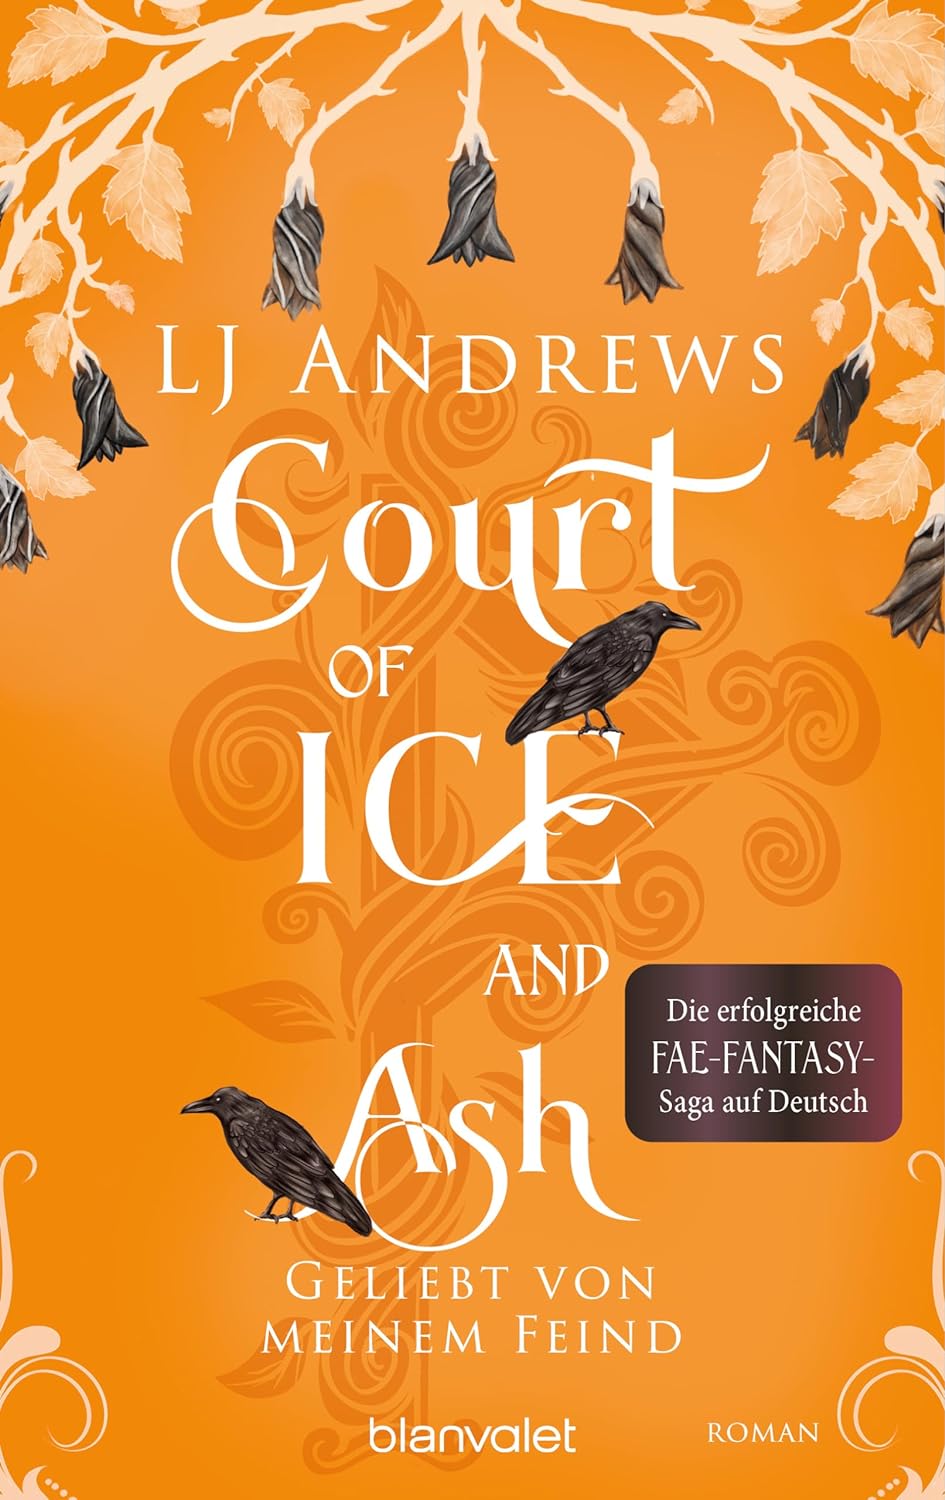 LJ Andrews - Court of Ice and Ash - Geliebt von meinem Feind